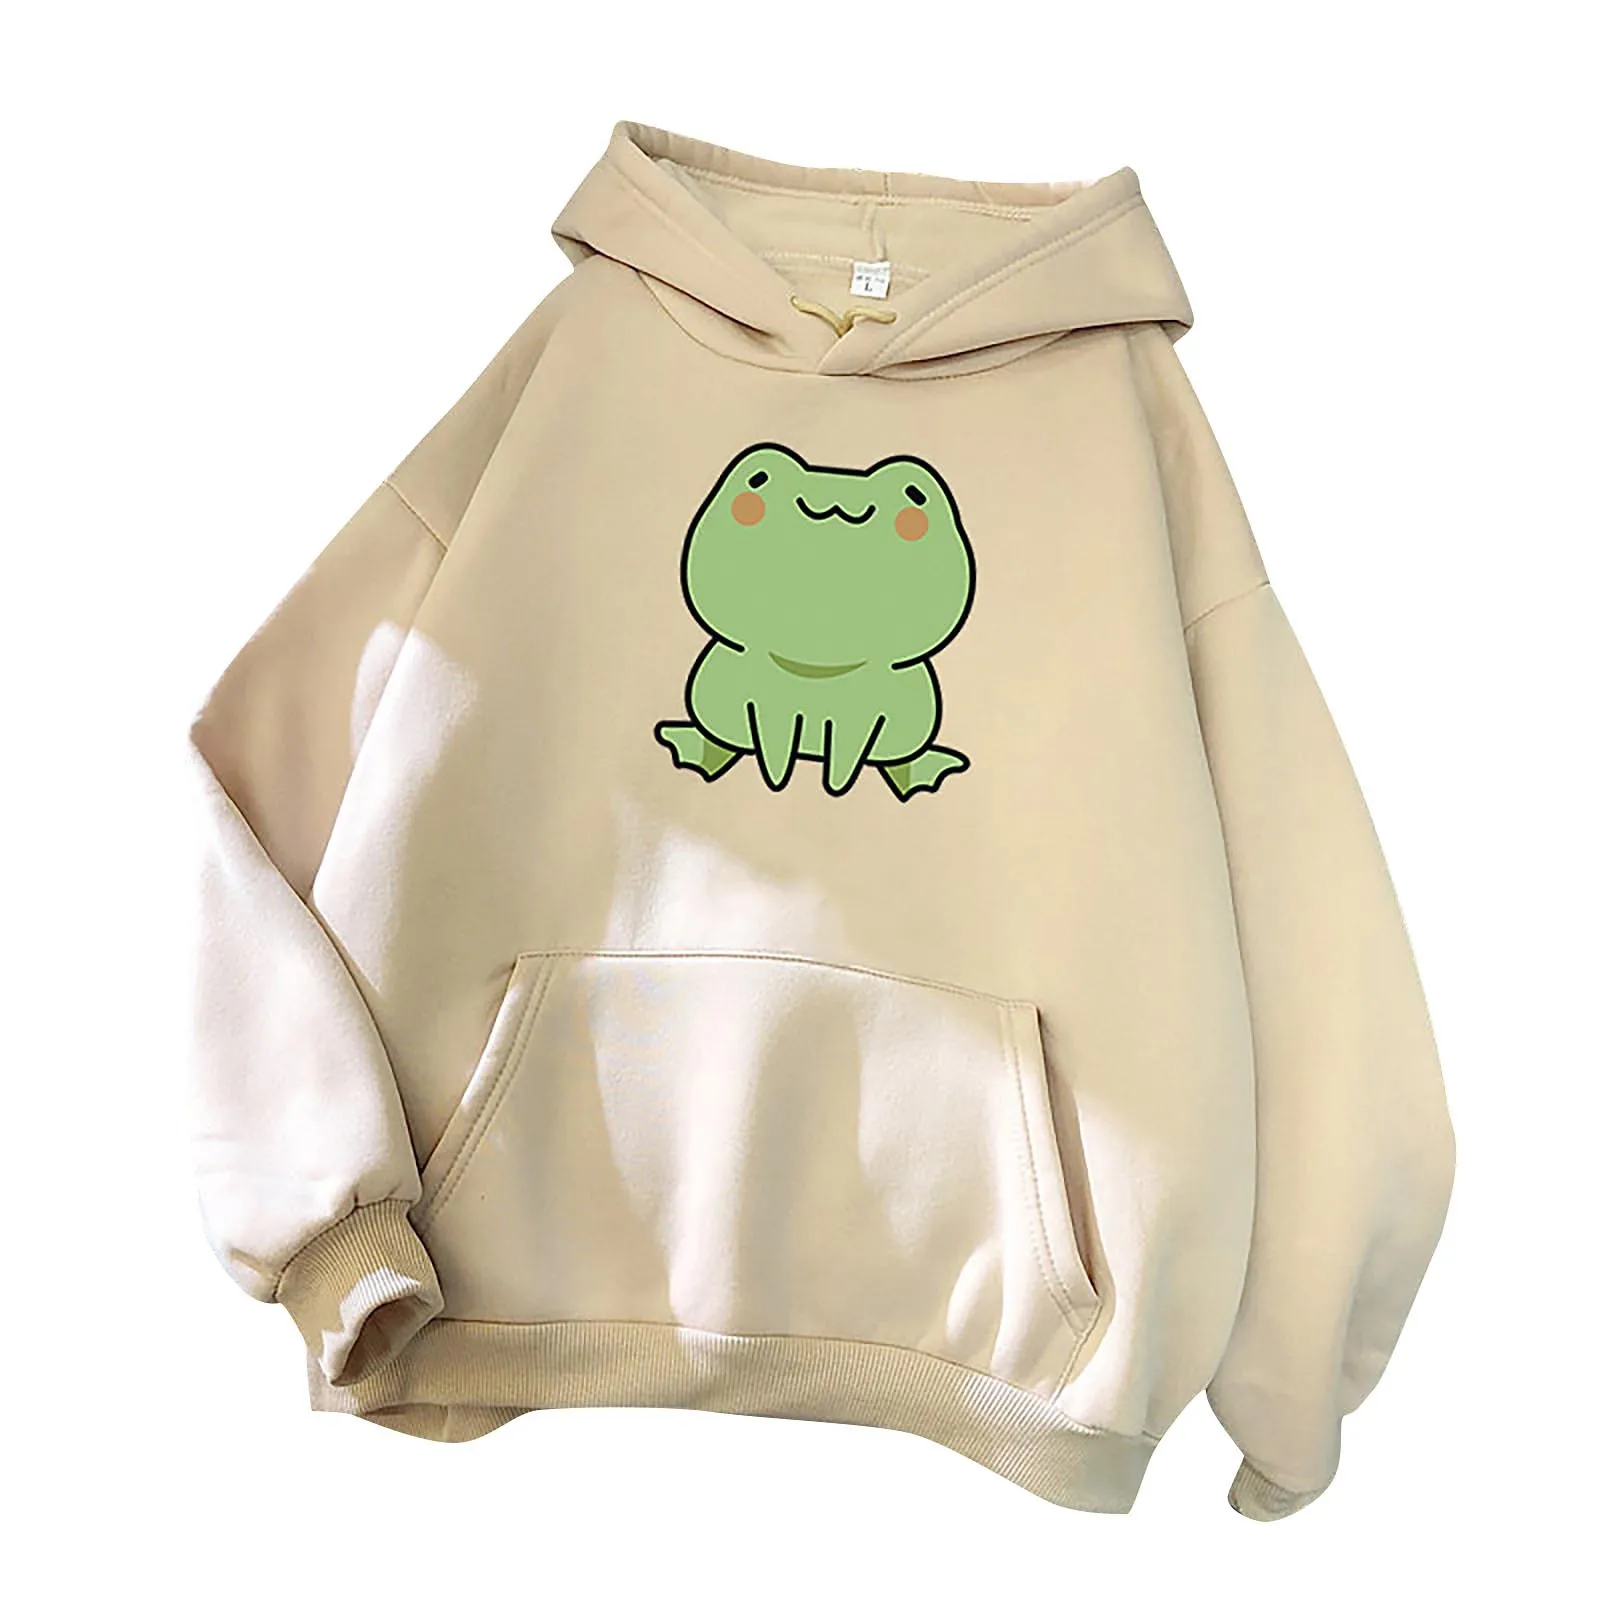 Kawaii Frog Hoodies Women Fashion Long Sleeve Cute Animal Printed Hoodie Loosen Pullover Sweatshirt Blouse Female Tops Moletom